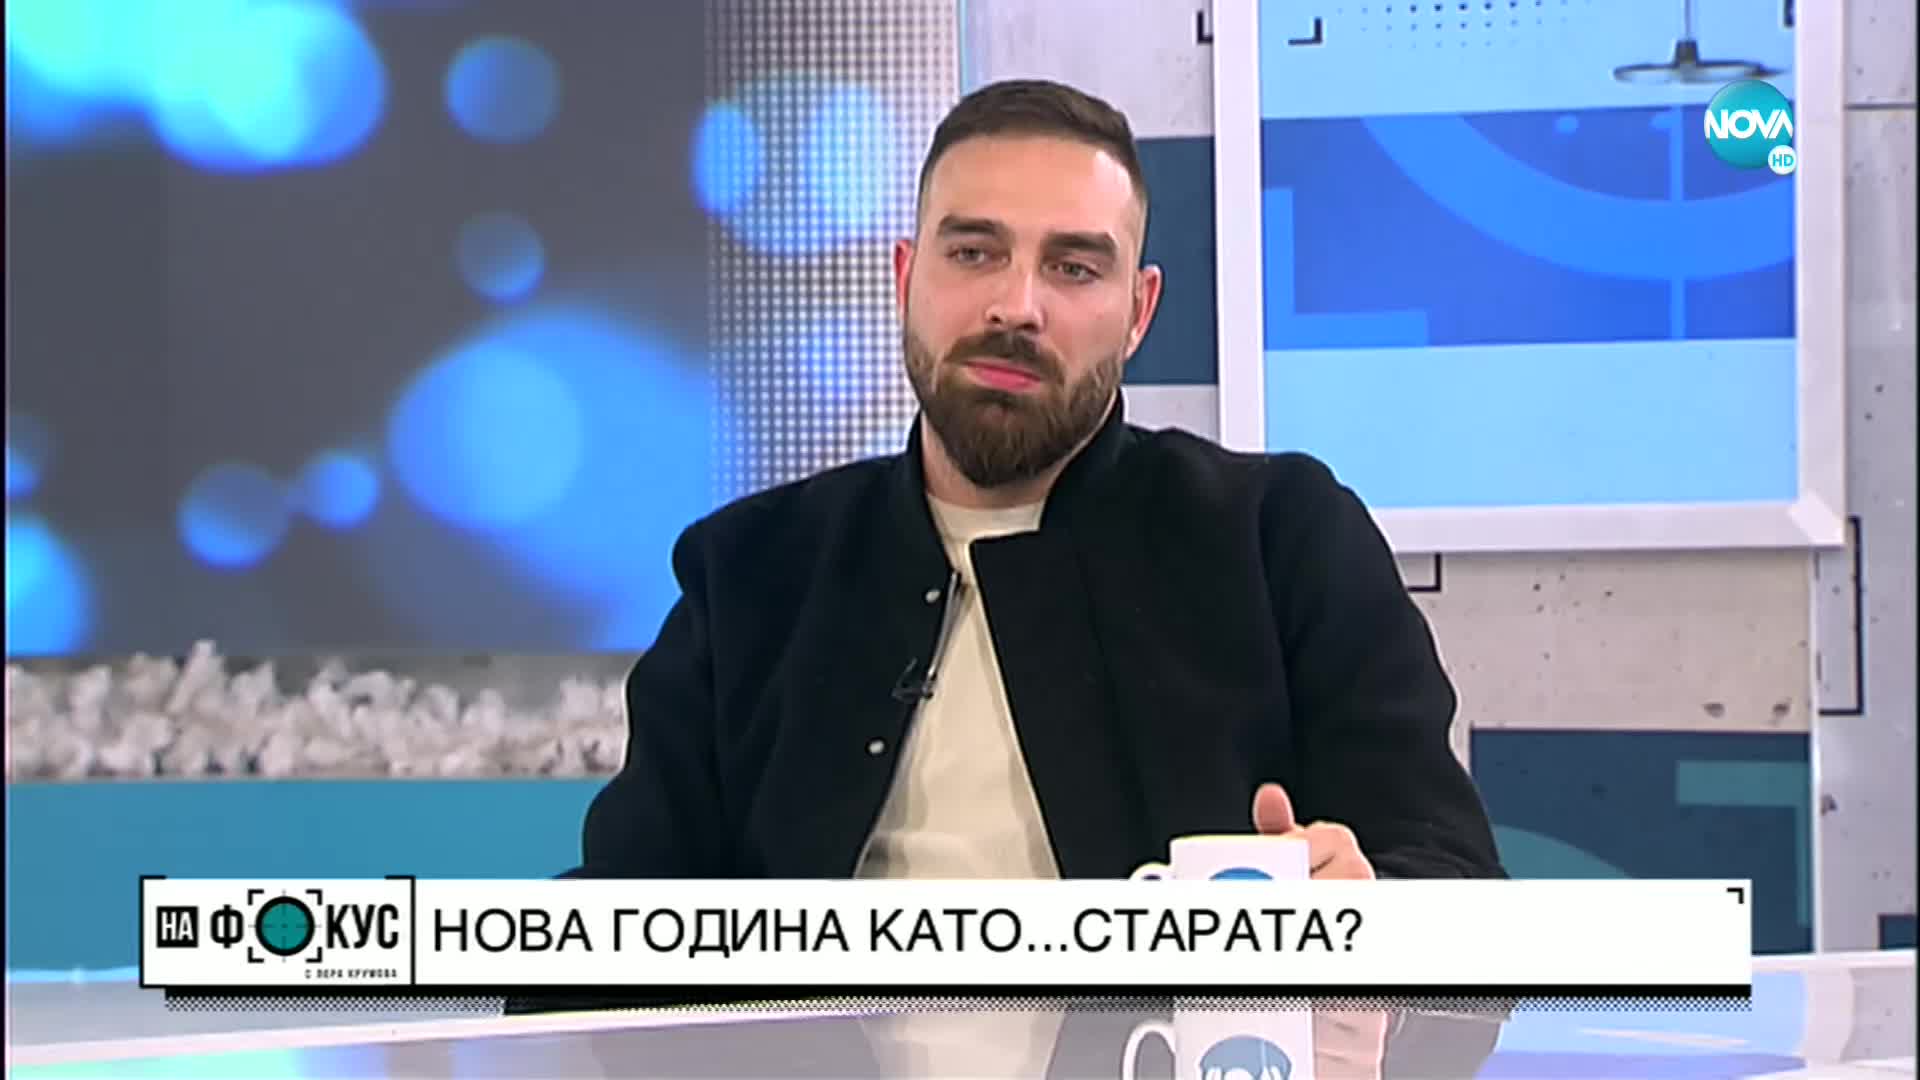 Йонислав Йотов-Тото: През 2021 г. постигнах успехи, които не очаквах да имам